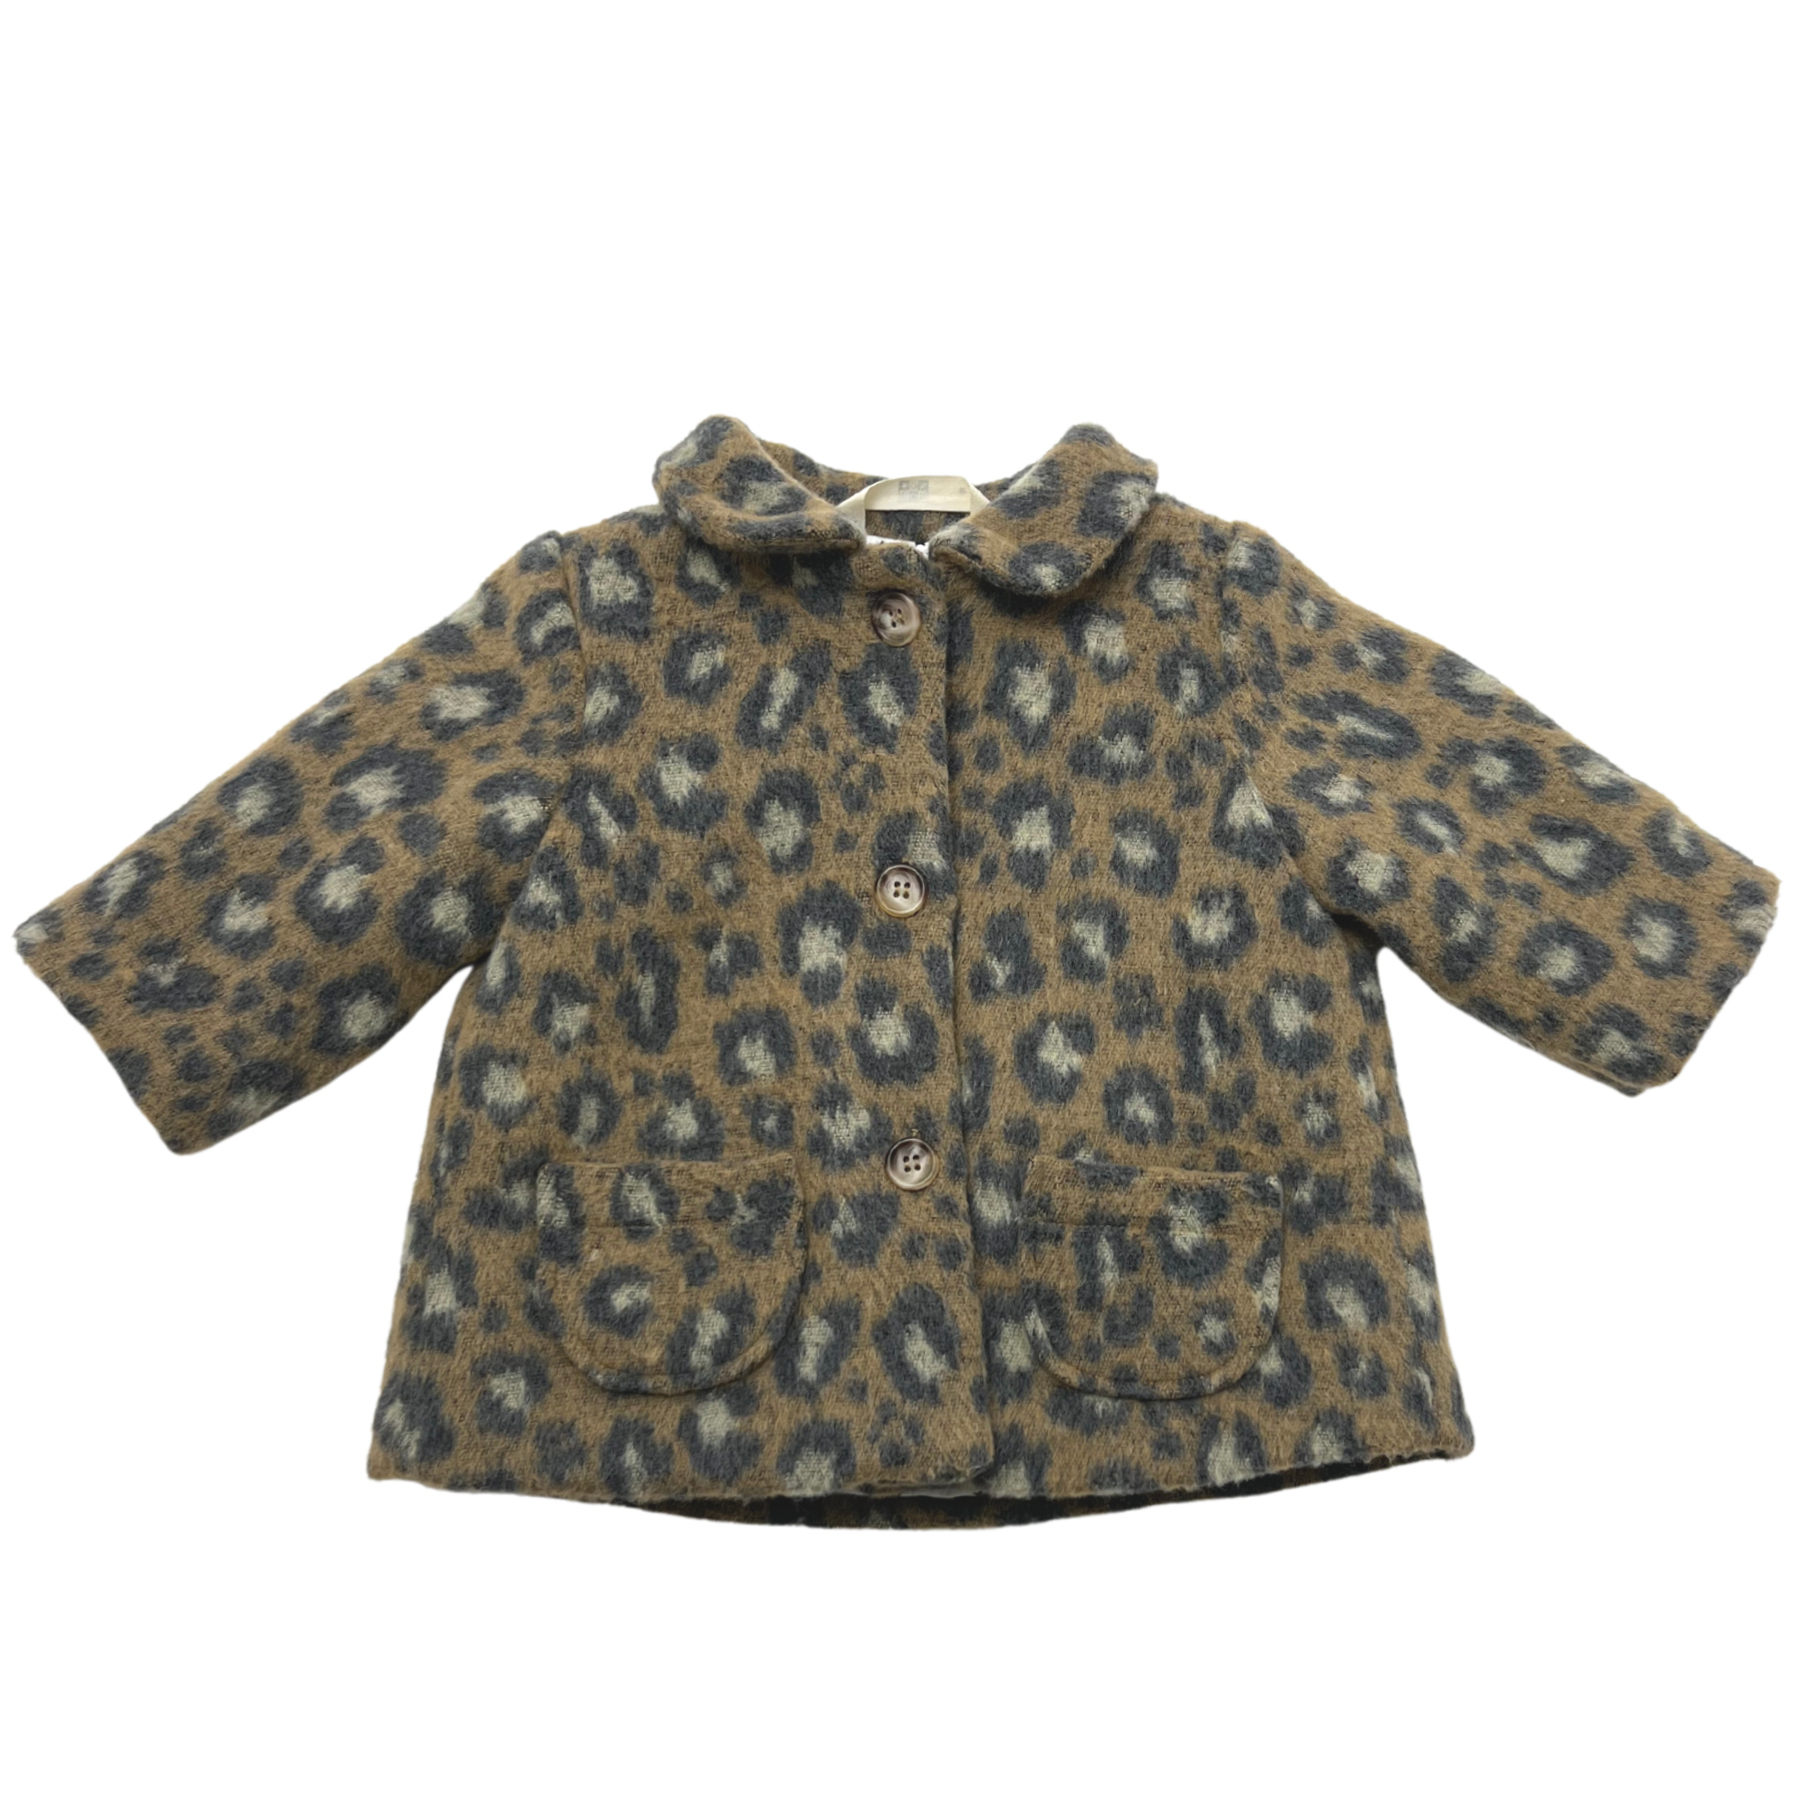 BONTON - Leopard coat - 6 months